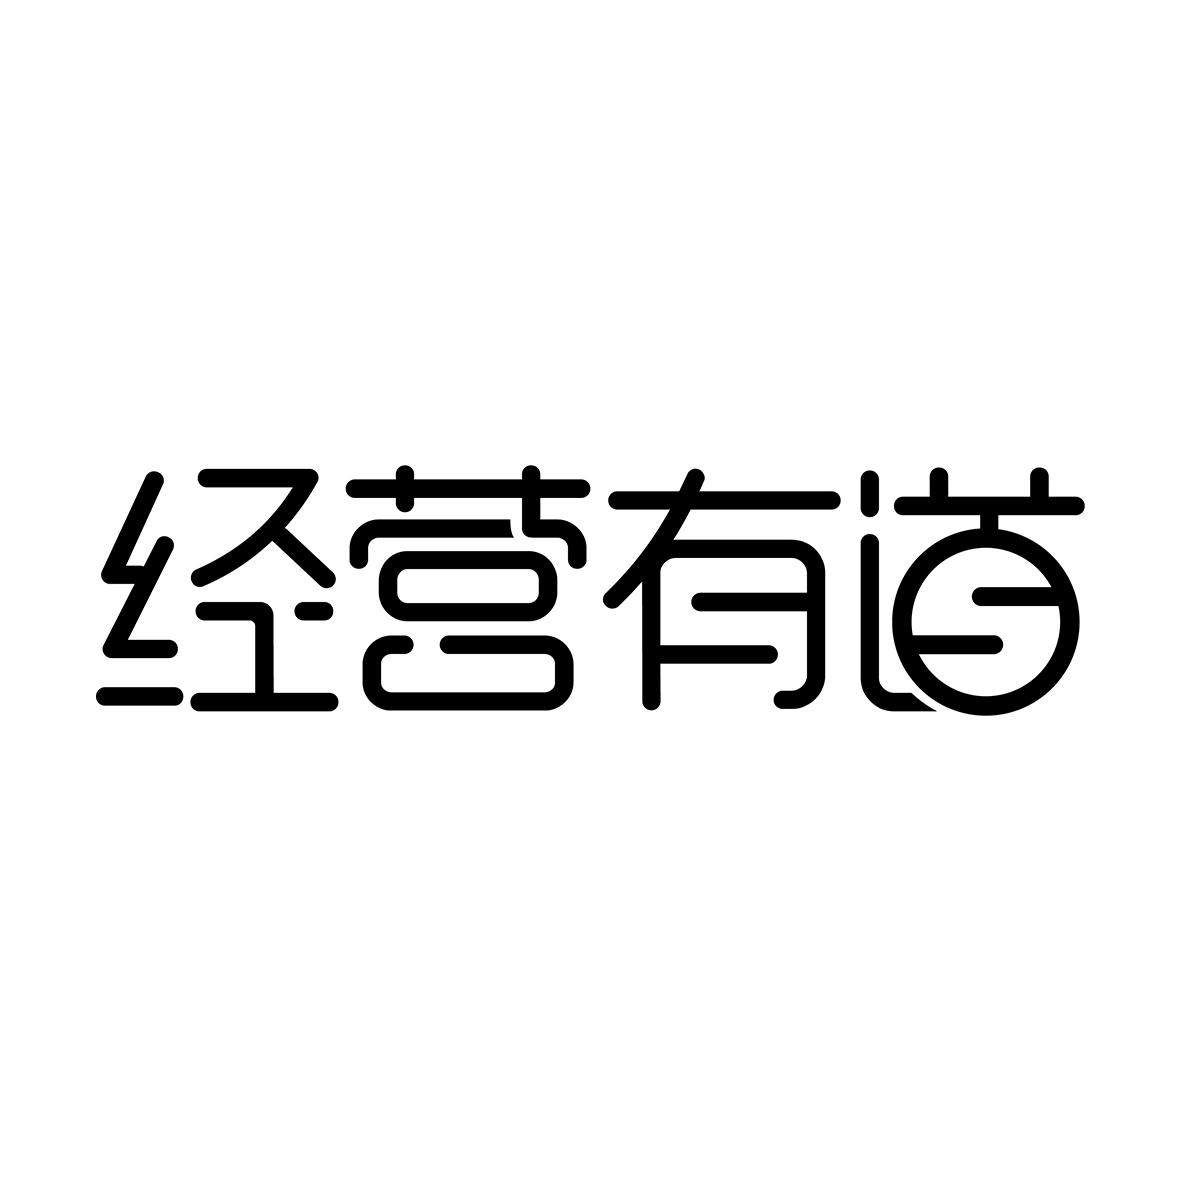 商标文字经营有道商标注册号 48839794,商标申请人泽羚科技(北京)有限